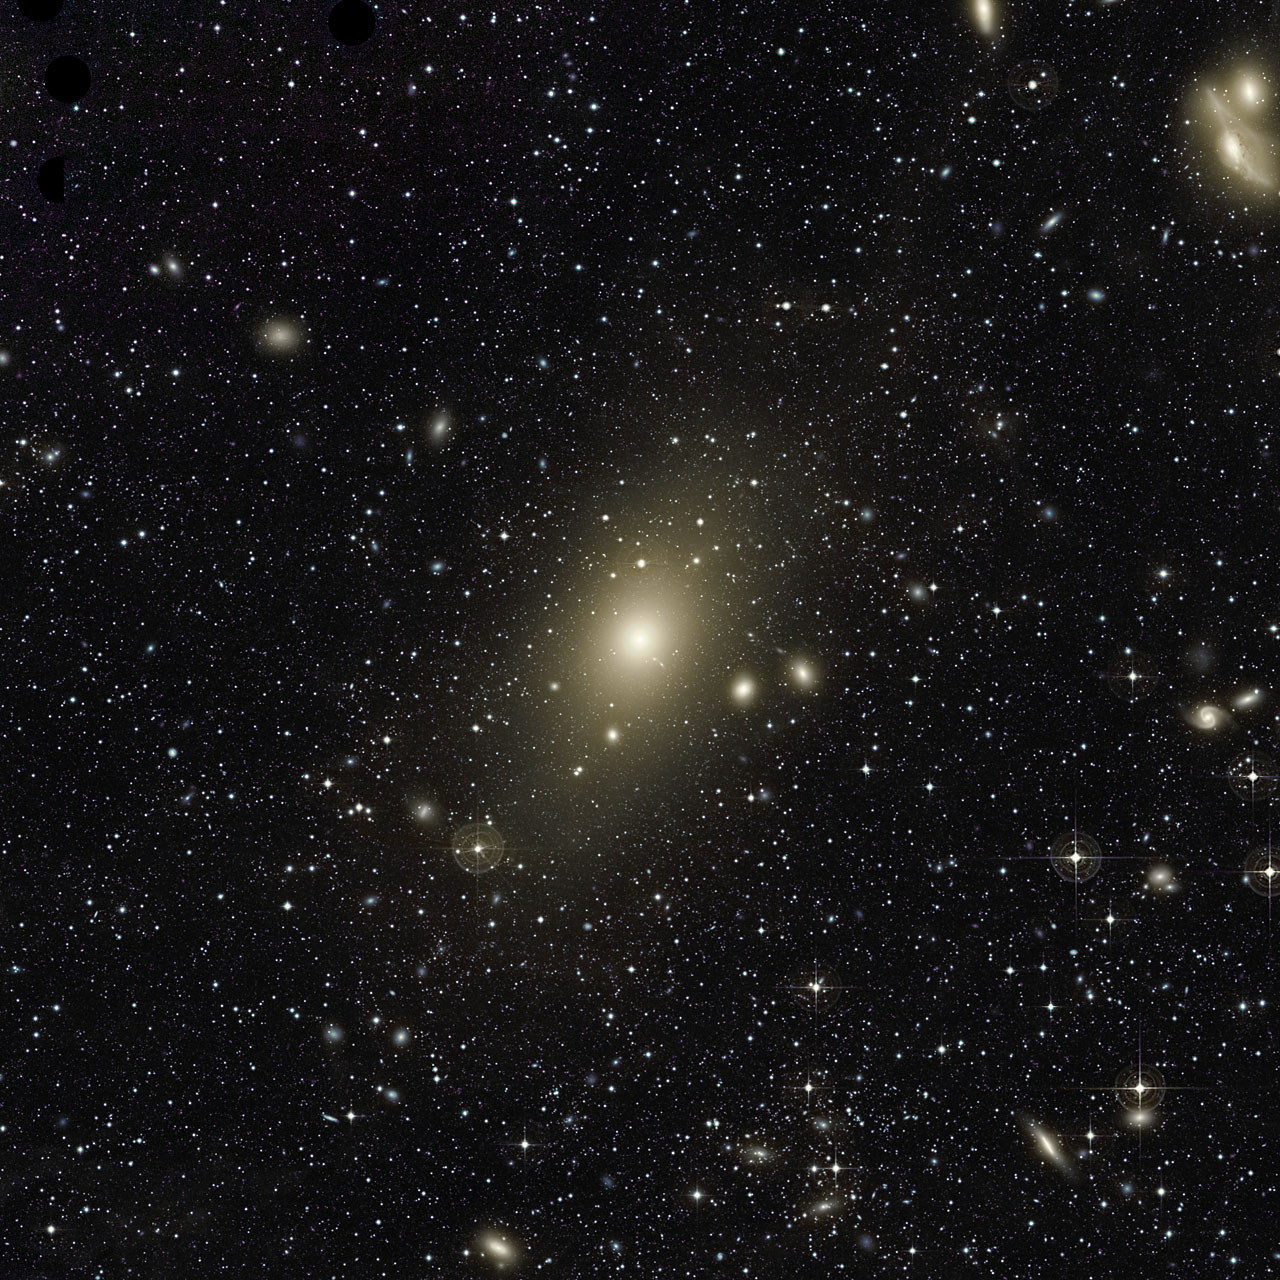 Les astronomes capturent la toute première image d'un trou noir